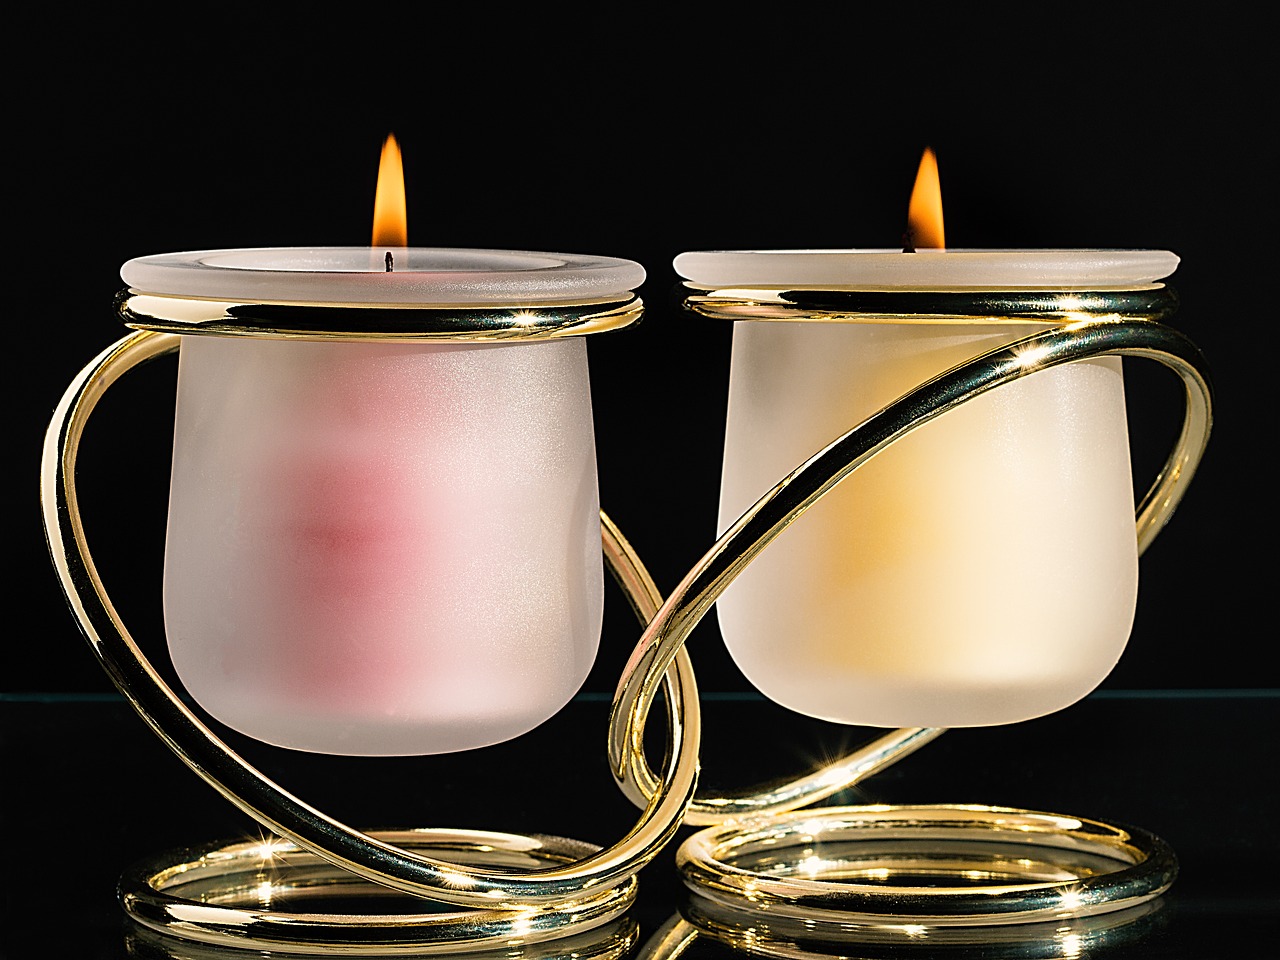 Image - candle mood candlelight romance